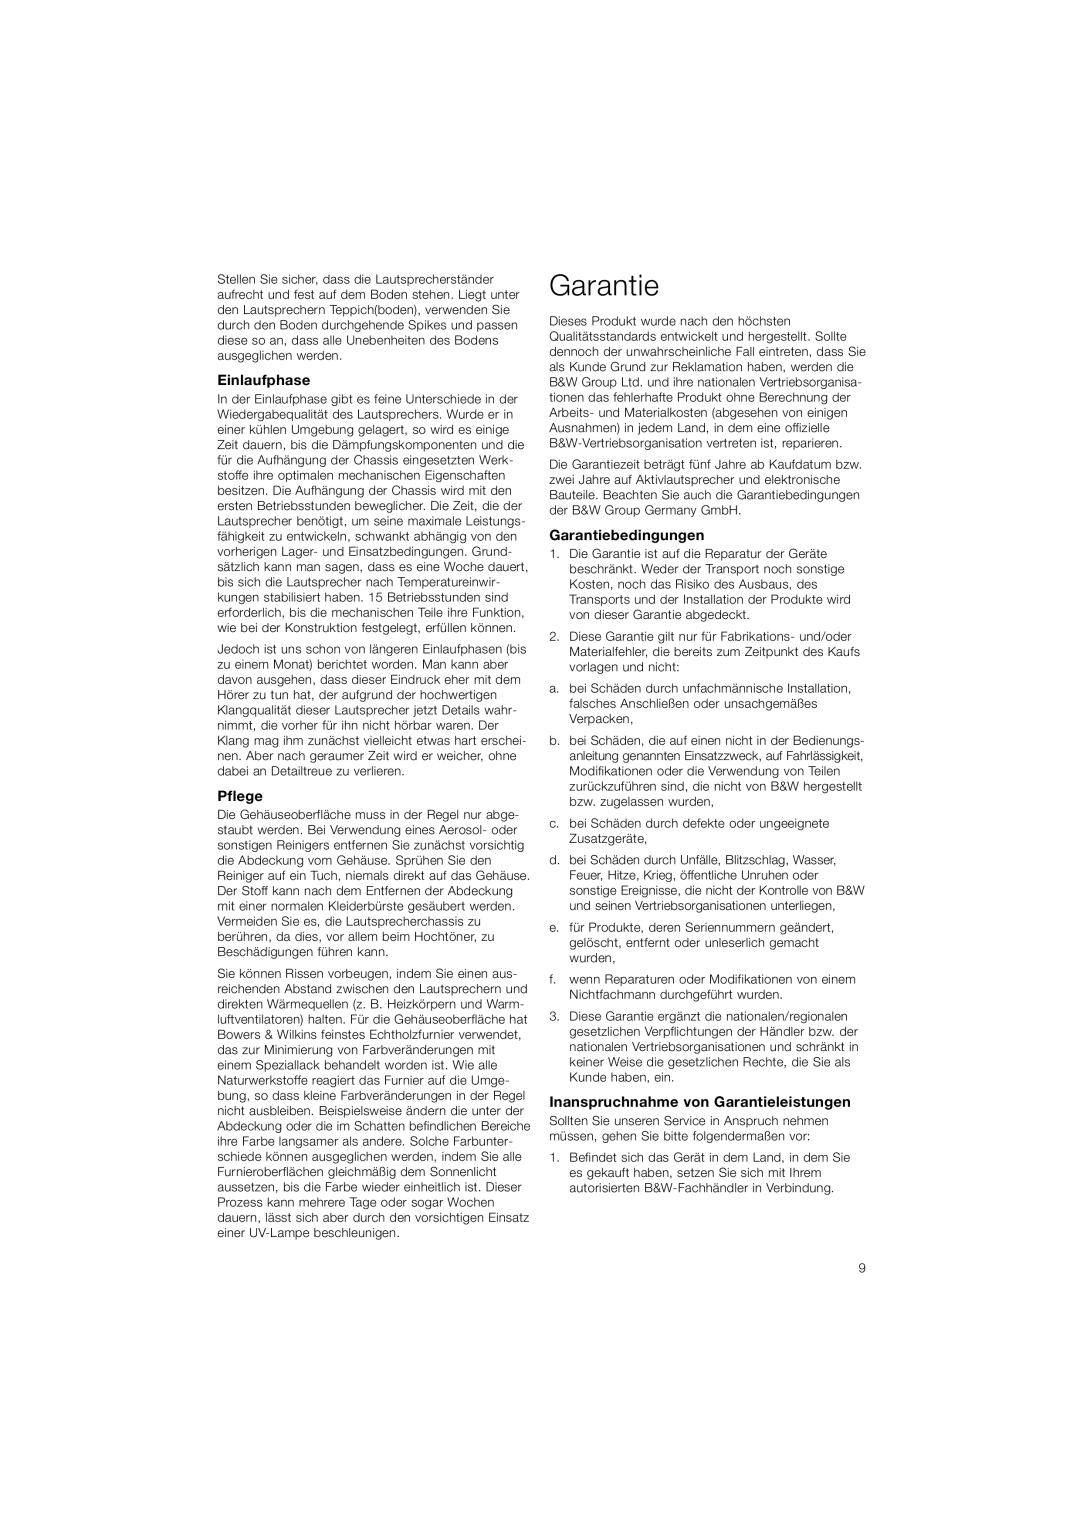 Bowers & Wilkins CM5 owner manual Einlaufphase, Pflege, Garantiebedingungen, Inanspruchnahme von Garantieleistungen 